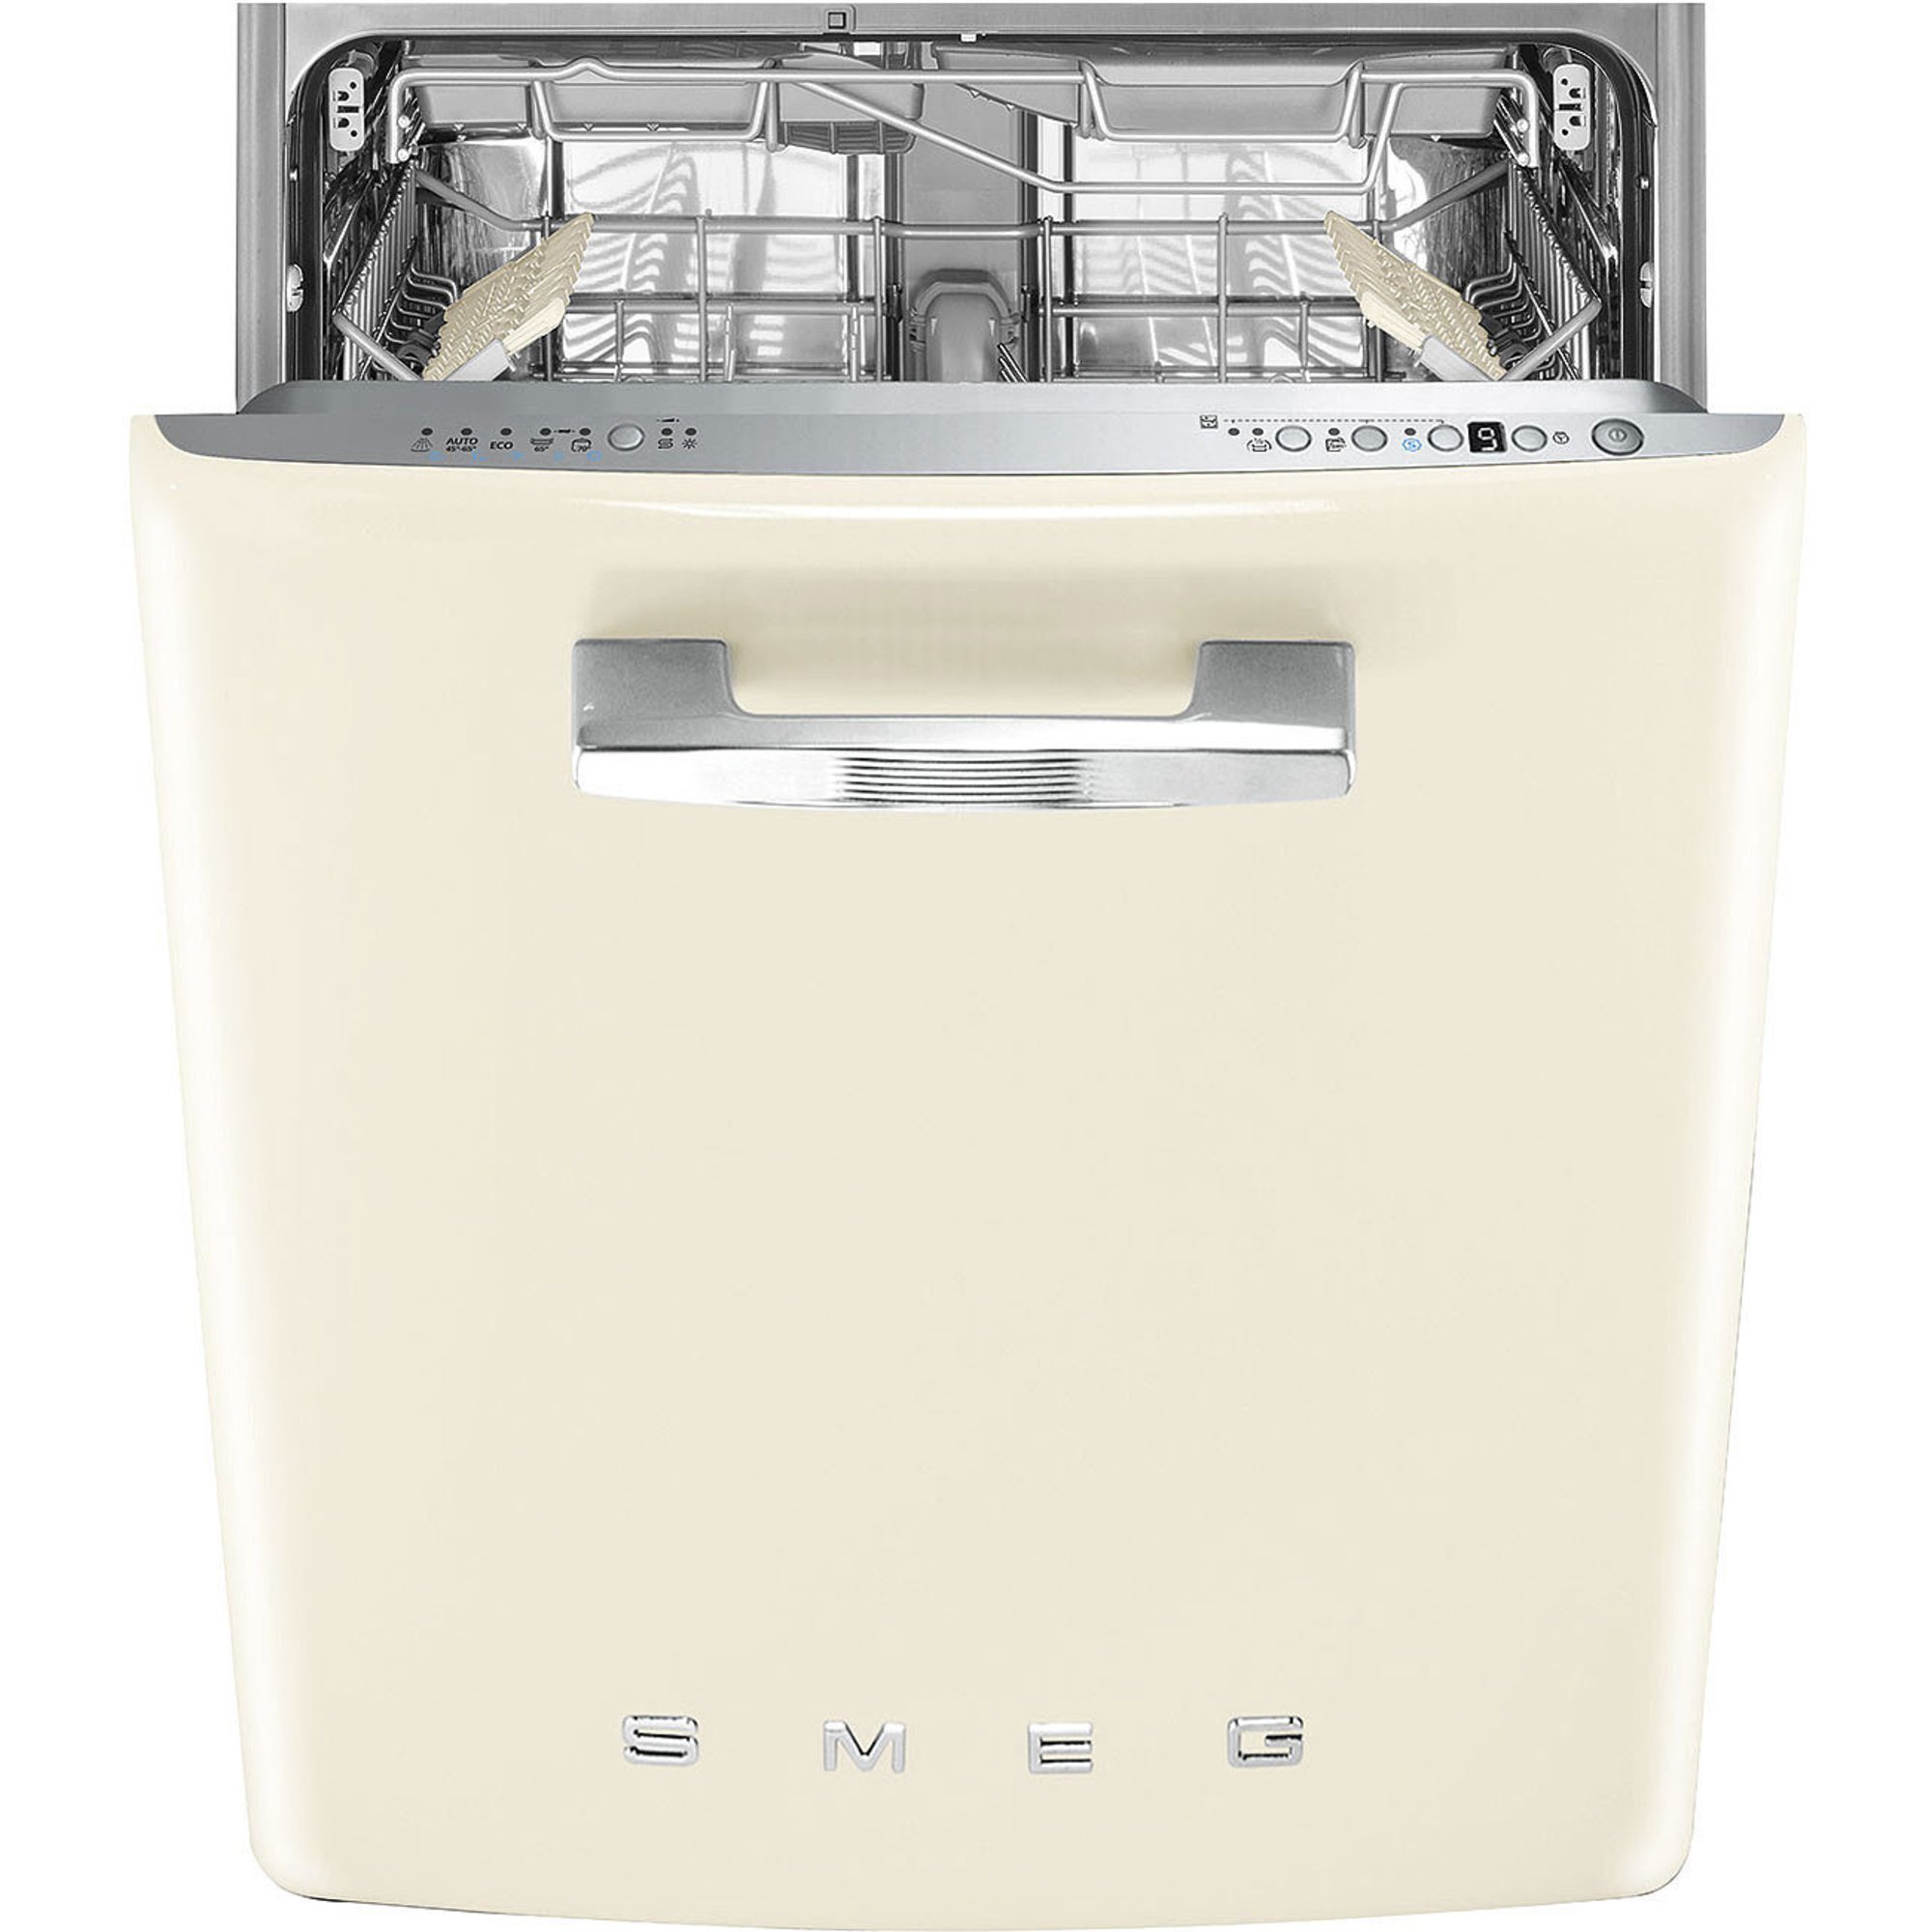 Billede af Smeg STFABCR3 opvaskemaskine til underbygning, creme